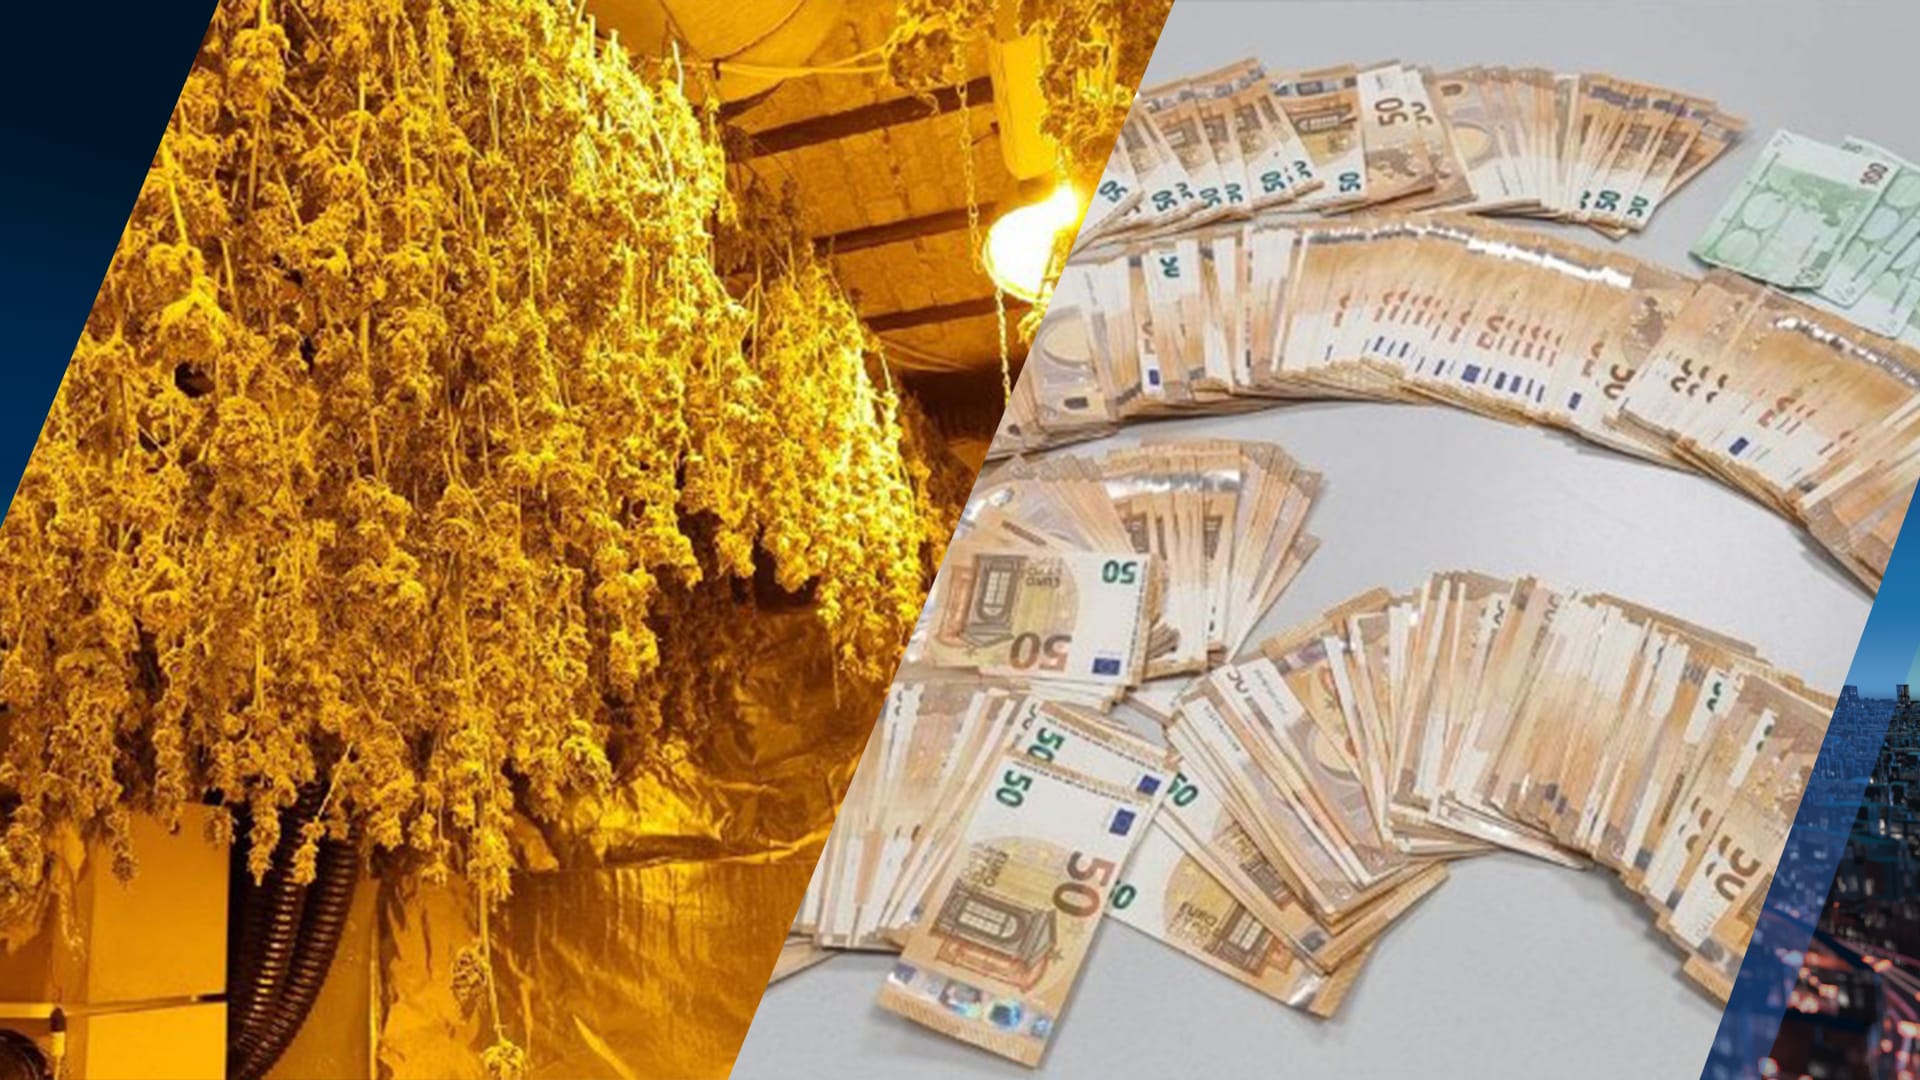 Hennepkwekerij, dure spullen en duizenden euro's contant geld gevonden in woning Sint Willebrord